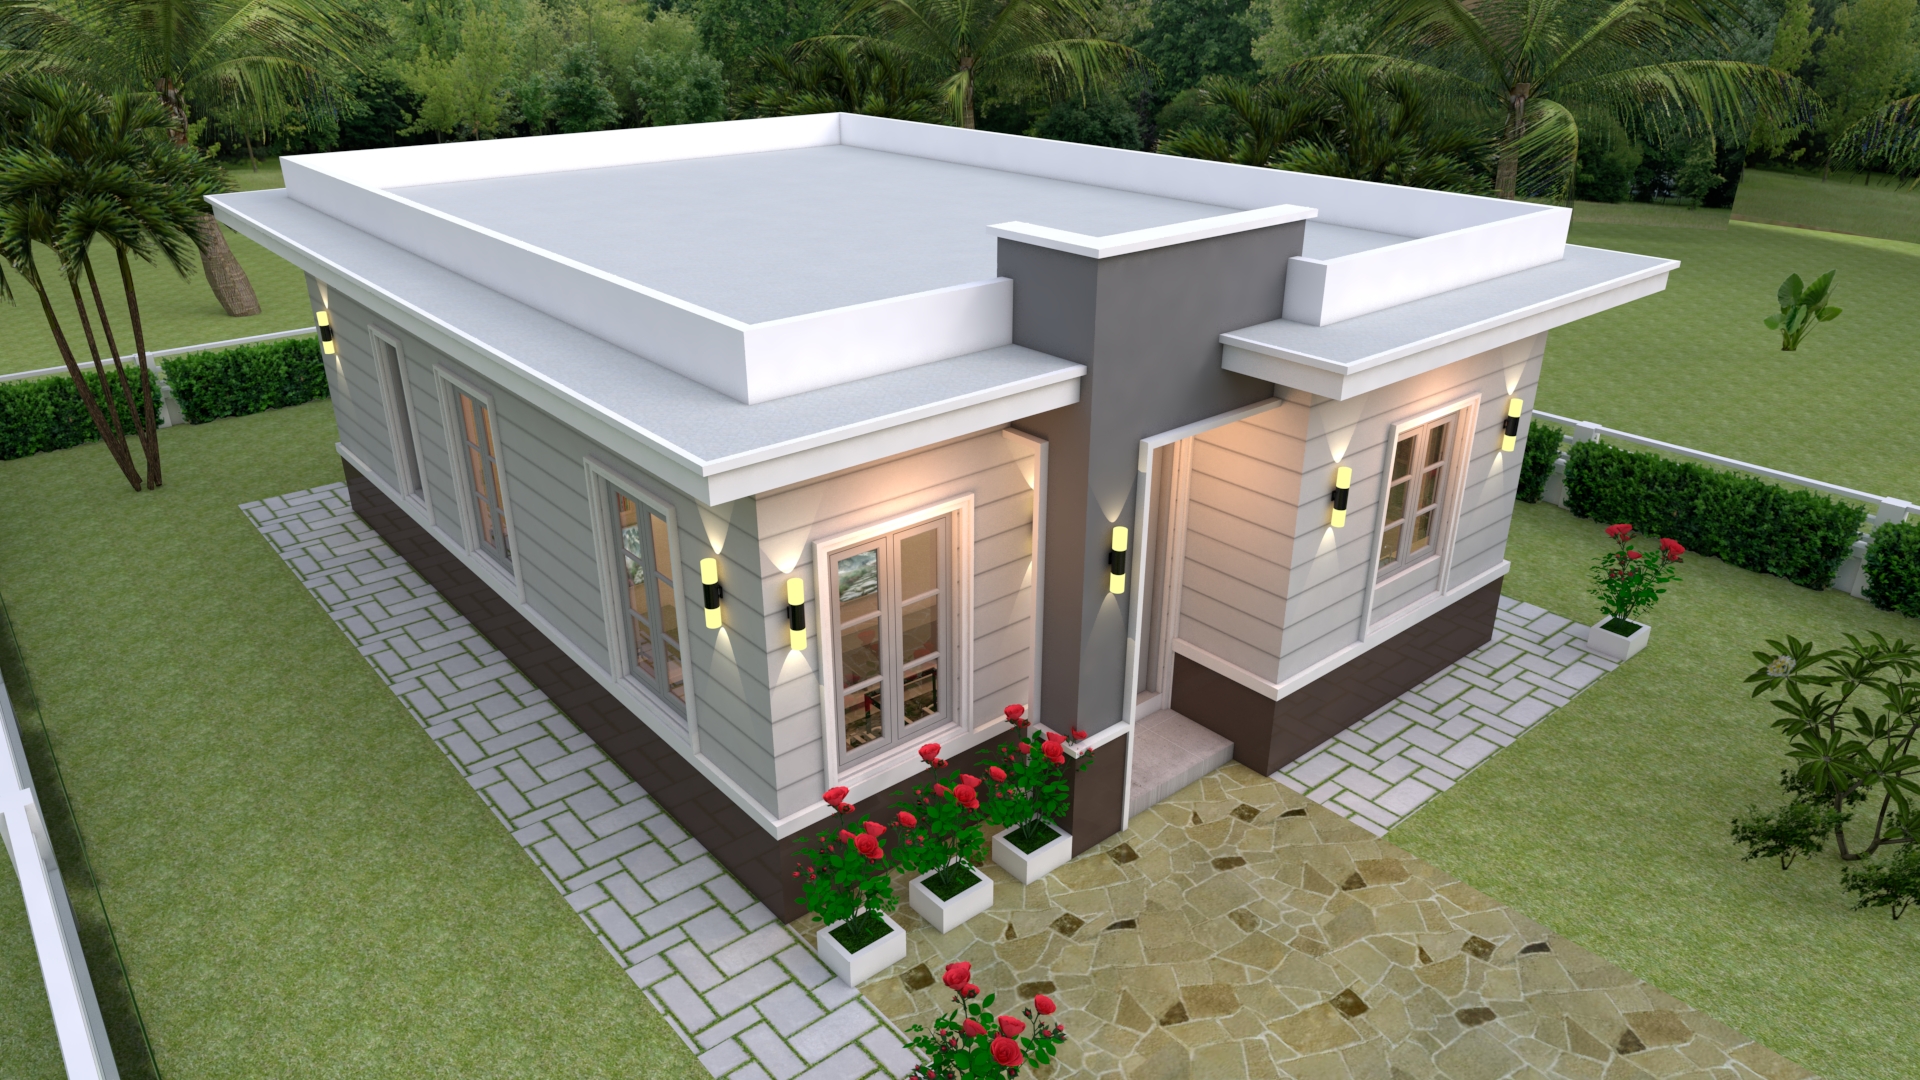 House Design 3d 7x10 Meter 23x33 Feet 3 Bedrooms Terrace Roof